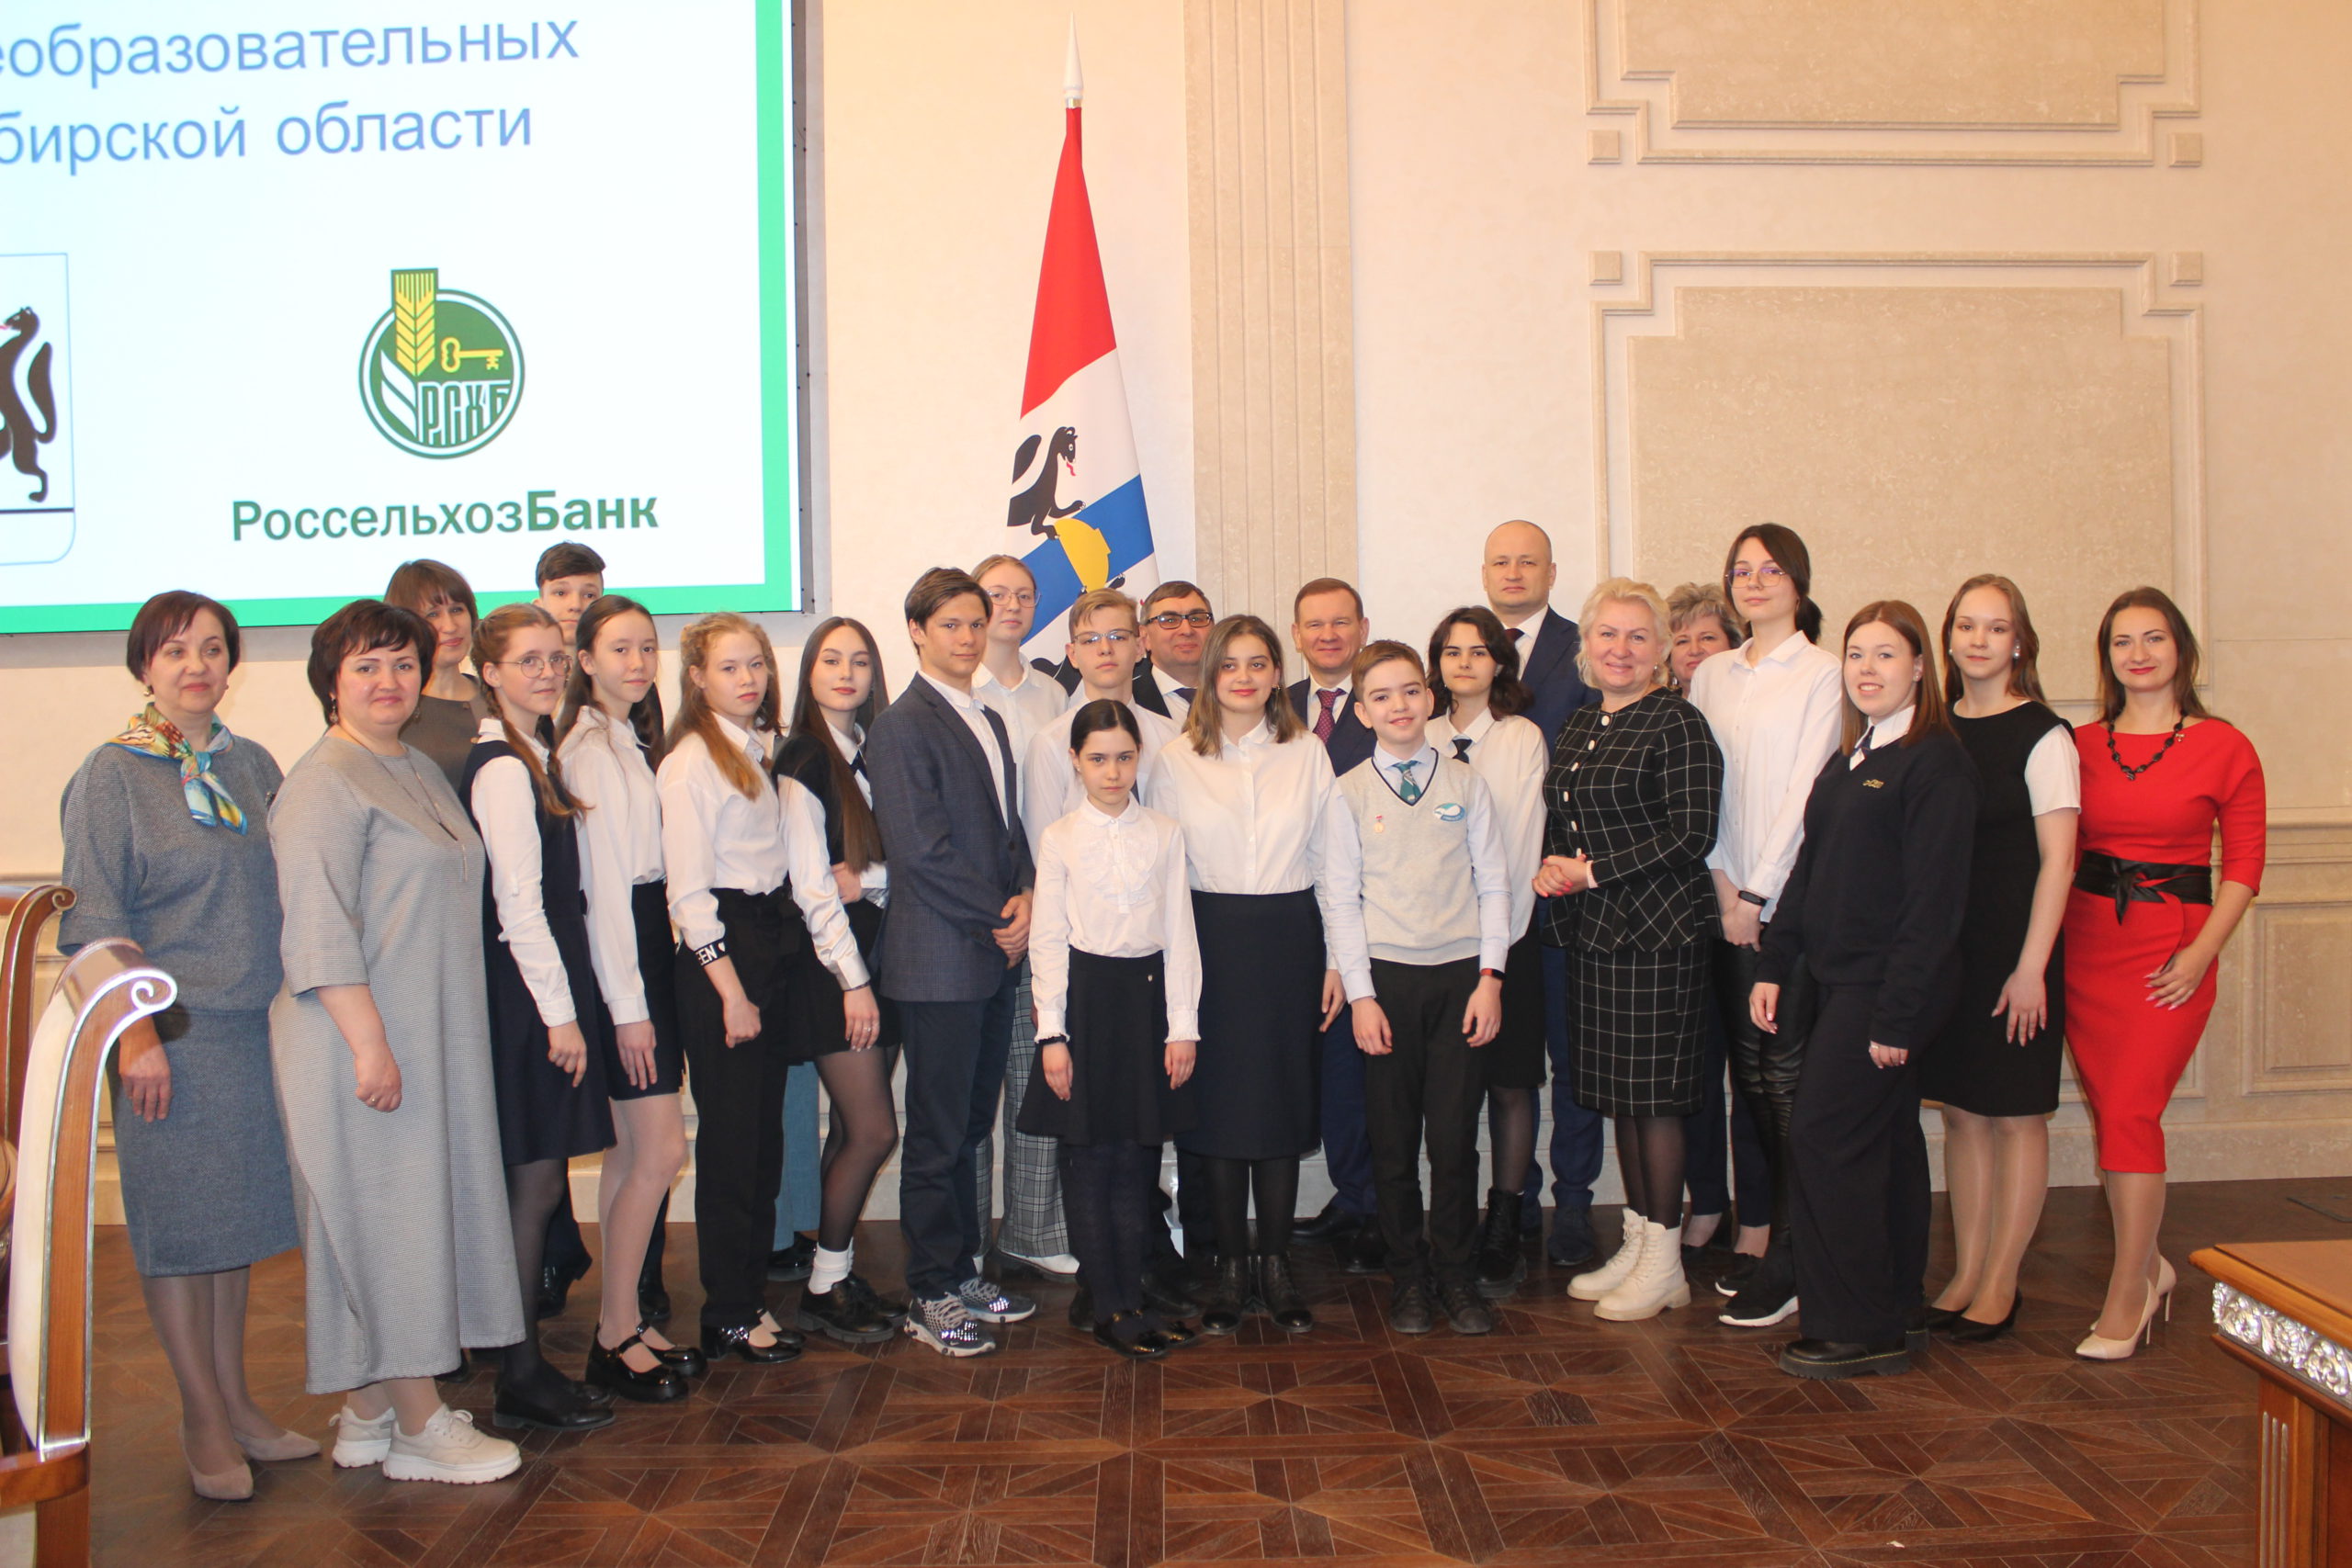 Победители и лауреаты конкурса школьников на знание темы органической продукции в Новосибирской области получили награды